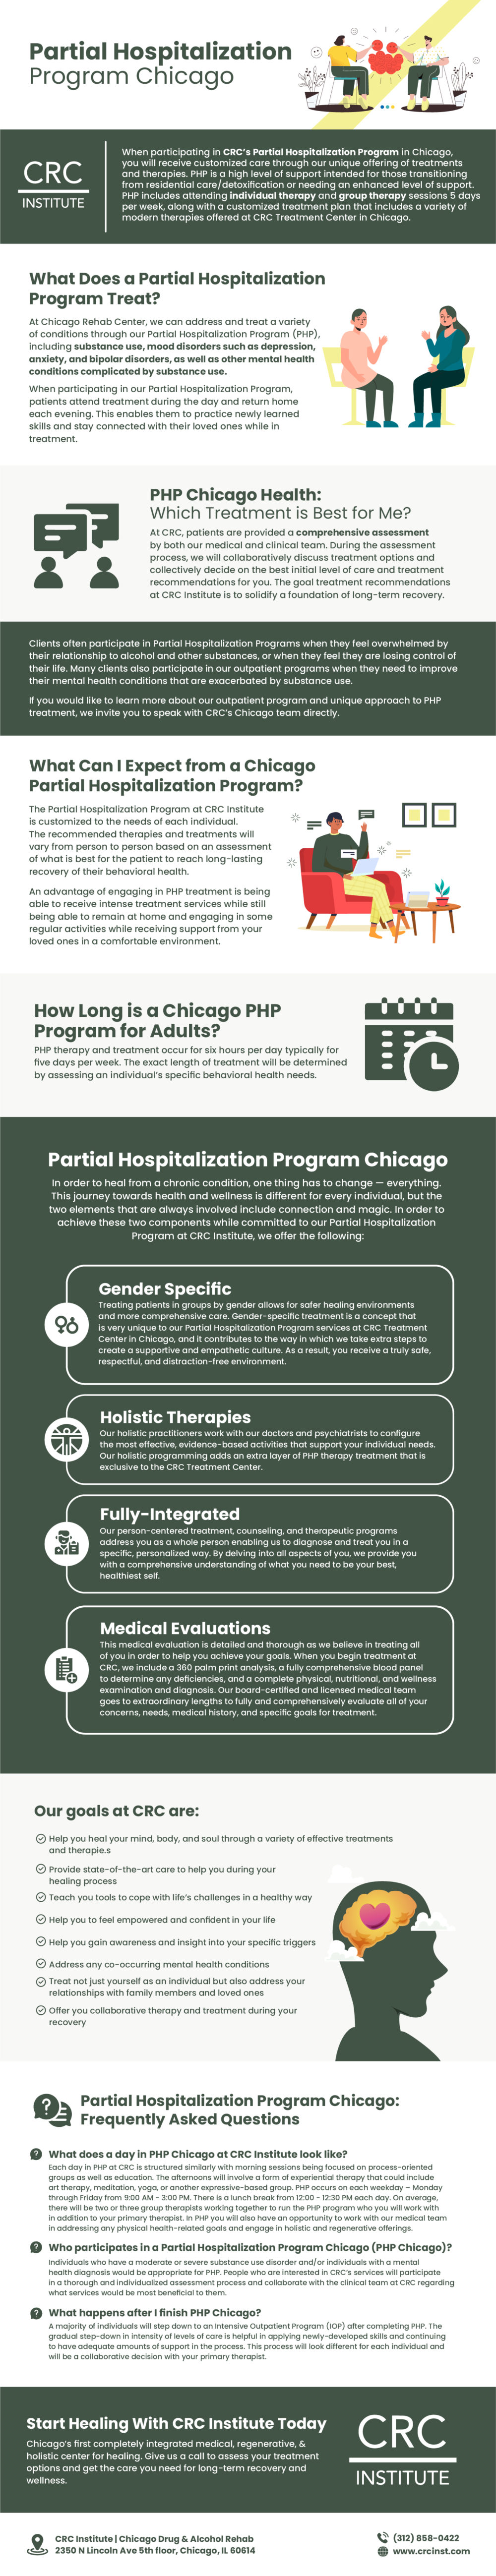 Partial Hospitalization Program Chicago